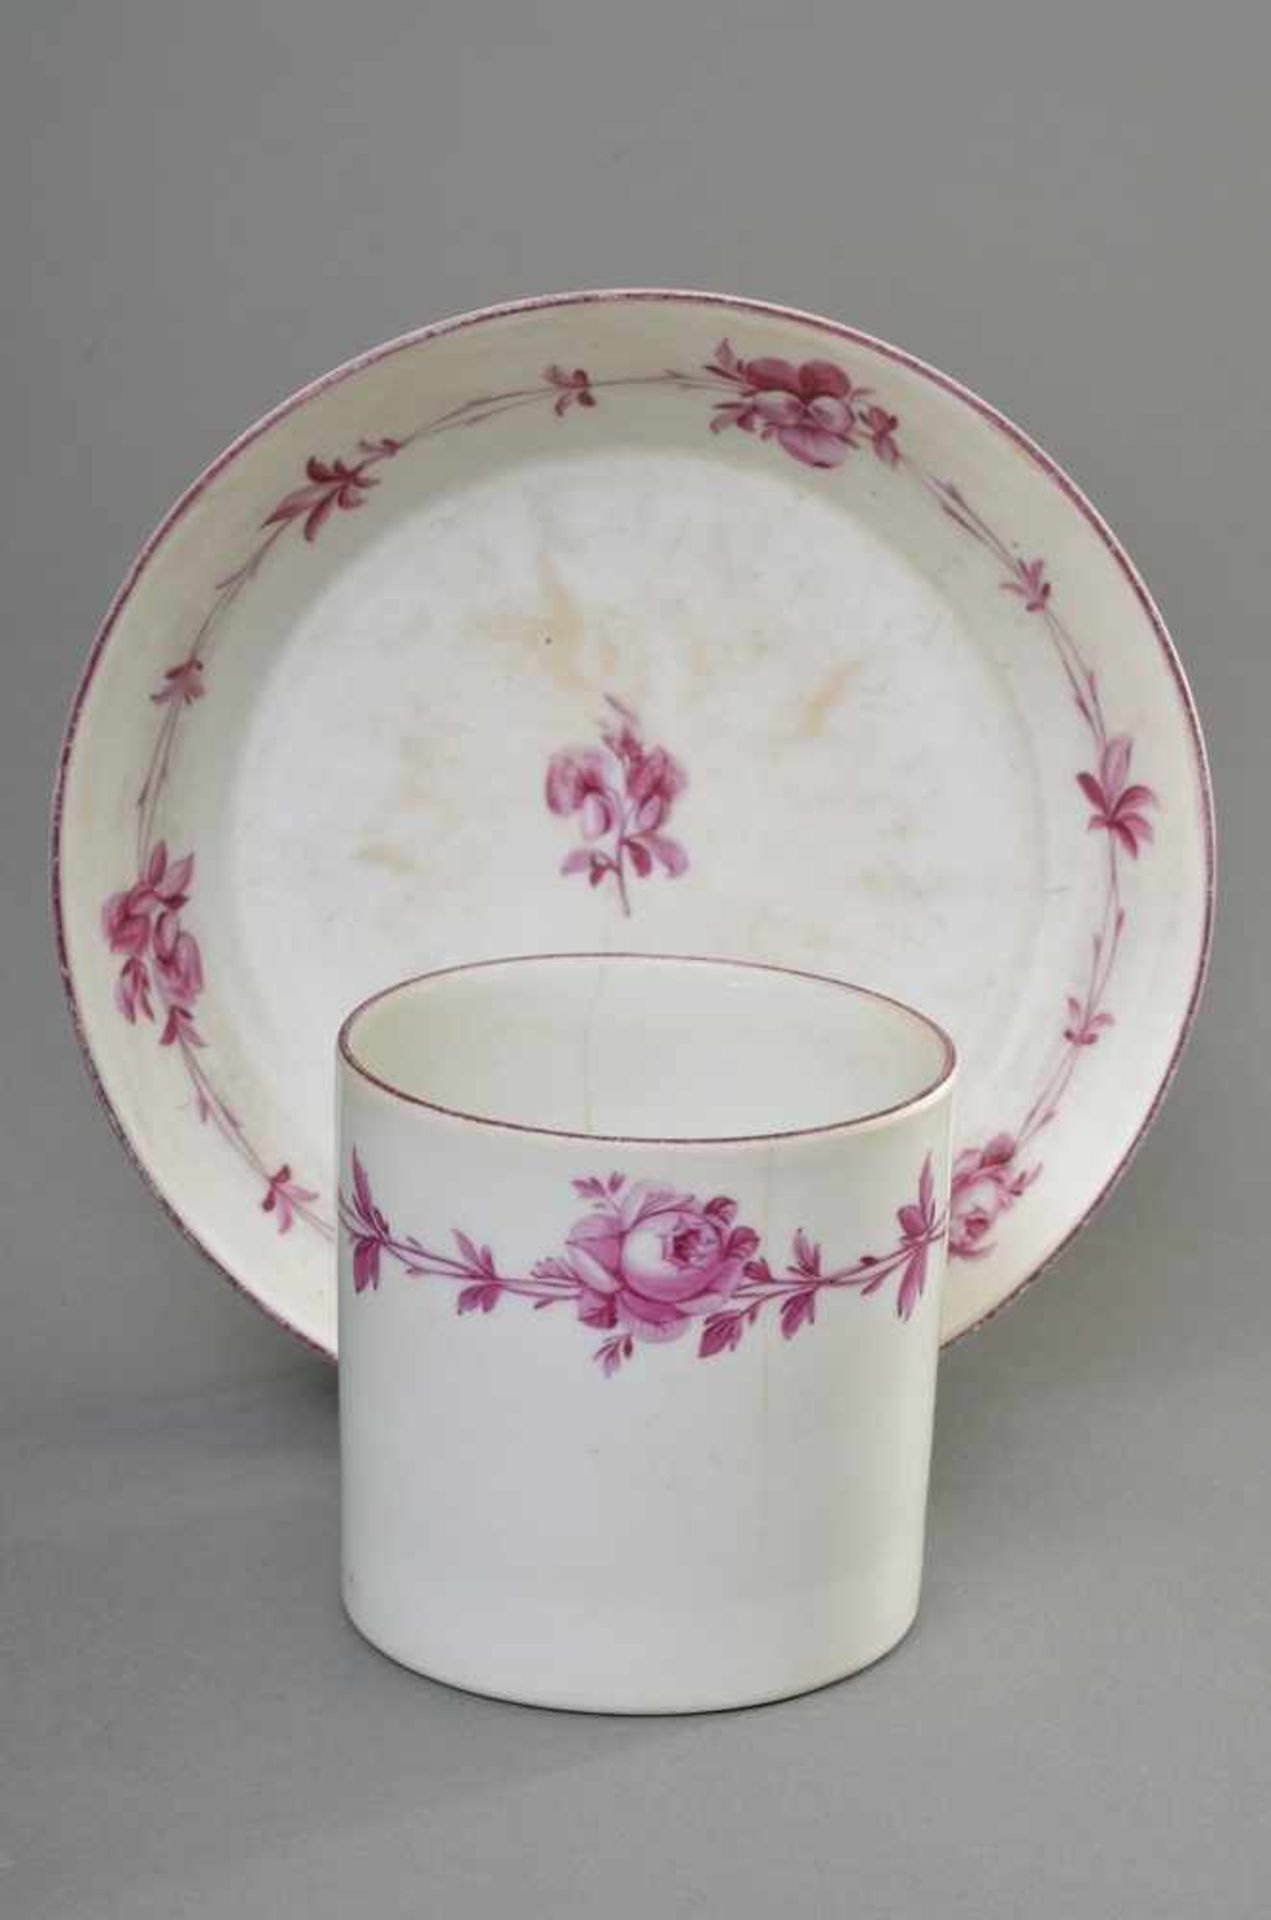 Marcolini Meissen Tasse "Purpur Rosenranke" in zylindrischer Form, H. 7,5cm berieben, Haarrisse ( - Bild 3 aus 4